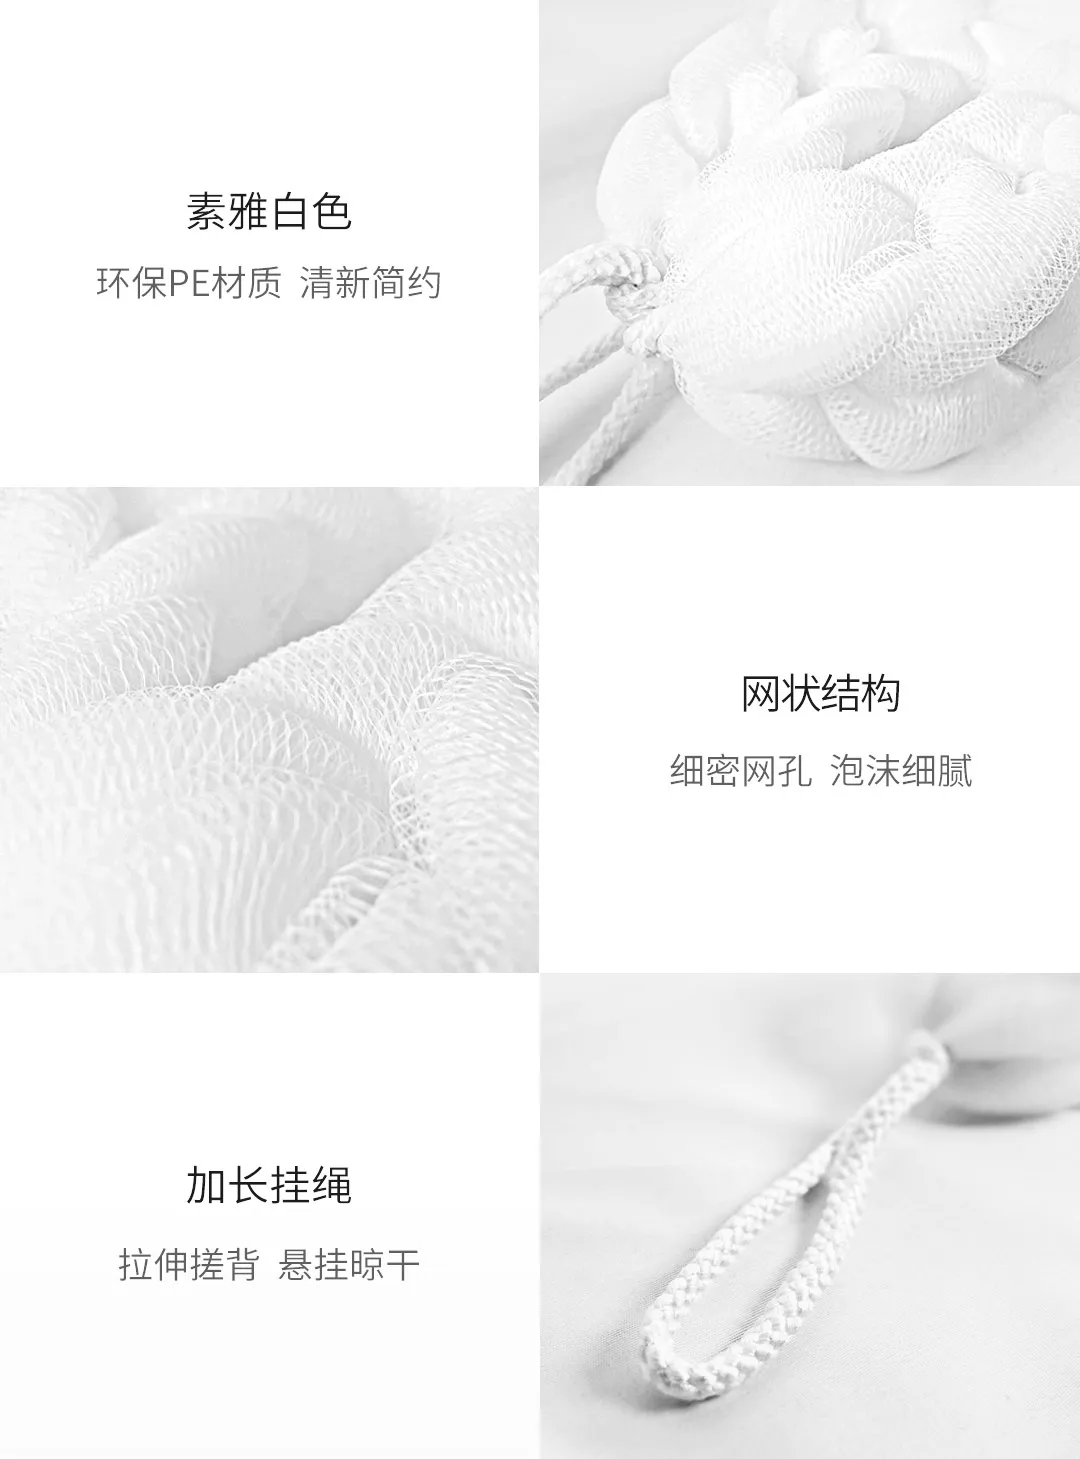 Новая Оригинальная Мочалка для ванны Xiaomi Youpin Qualitell белого цвета, богатая вспенивающейся мягкой текстурой, легко моется высокого качества